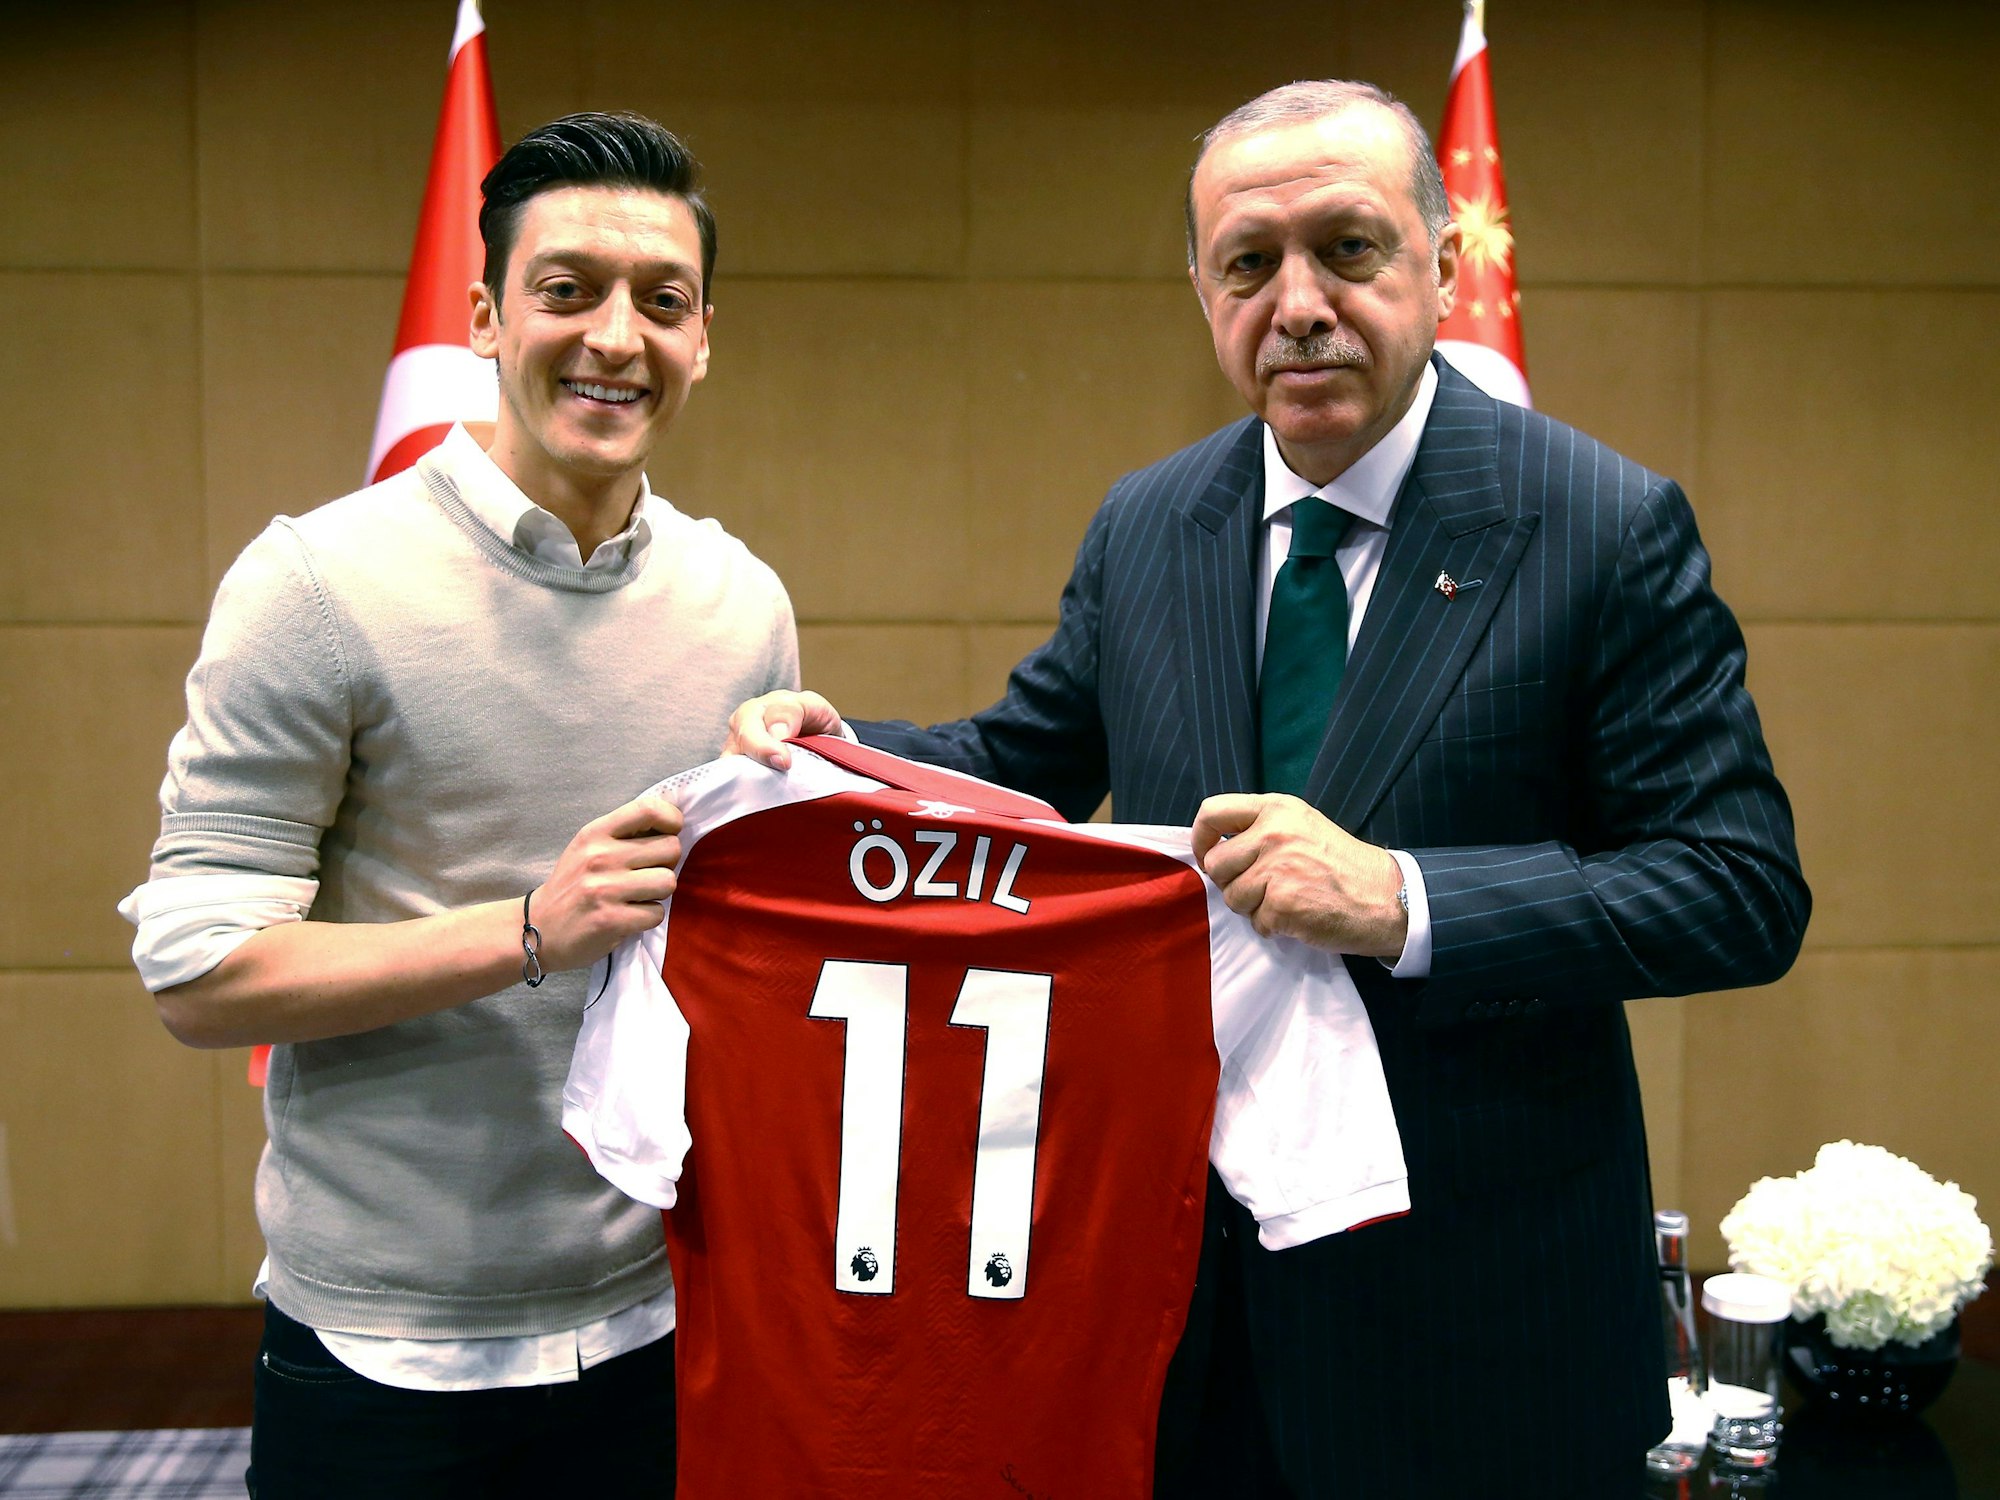 Recep Tayyip Erdogan, Staatspräsident der Türkei, hält zusammen mit Fußballspieler Mesut Özil vom englischen Premier-League-Verein FC Arsenal, ein Trikot von Özil.